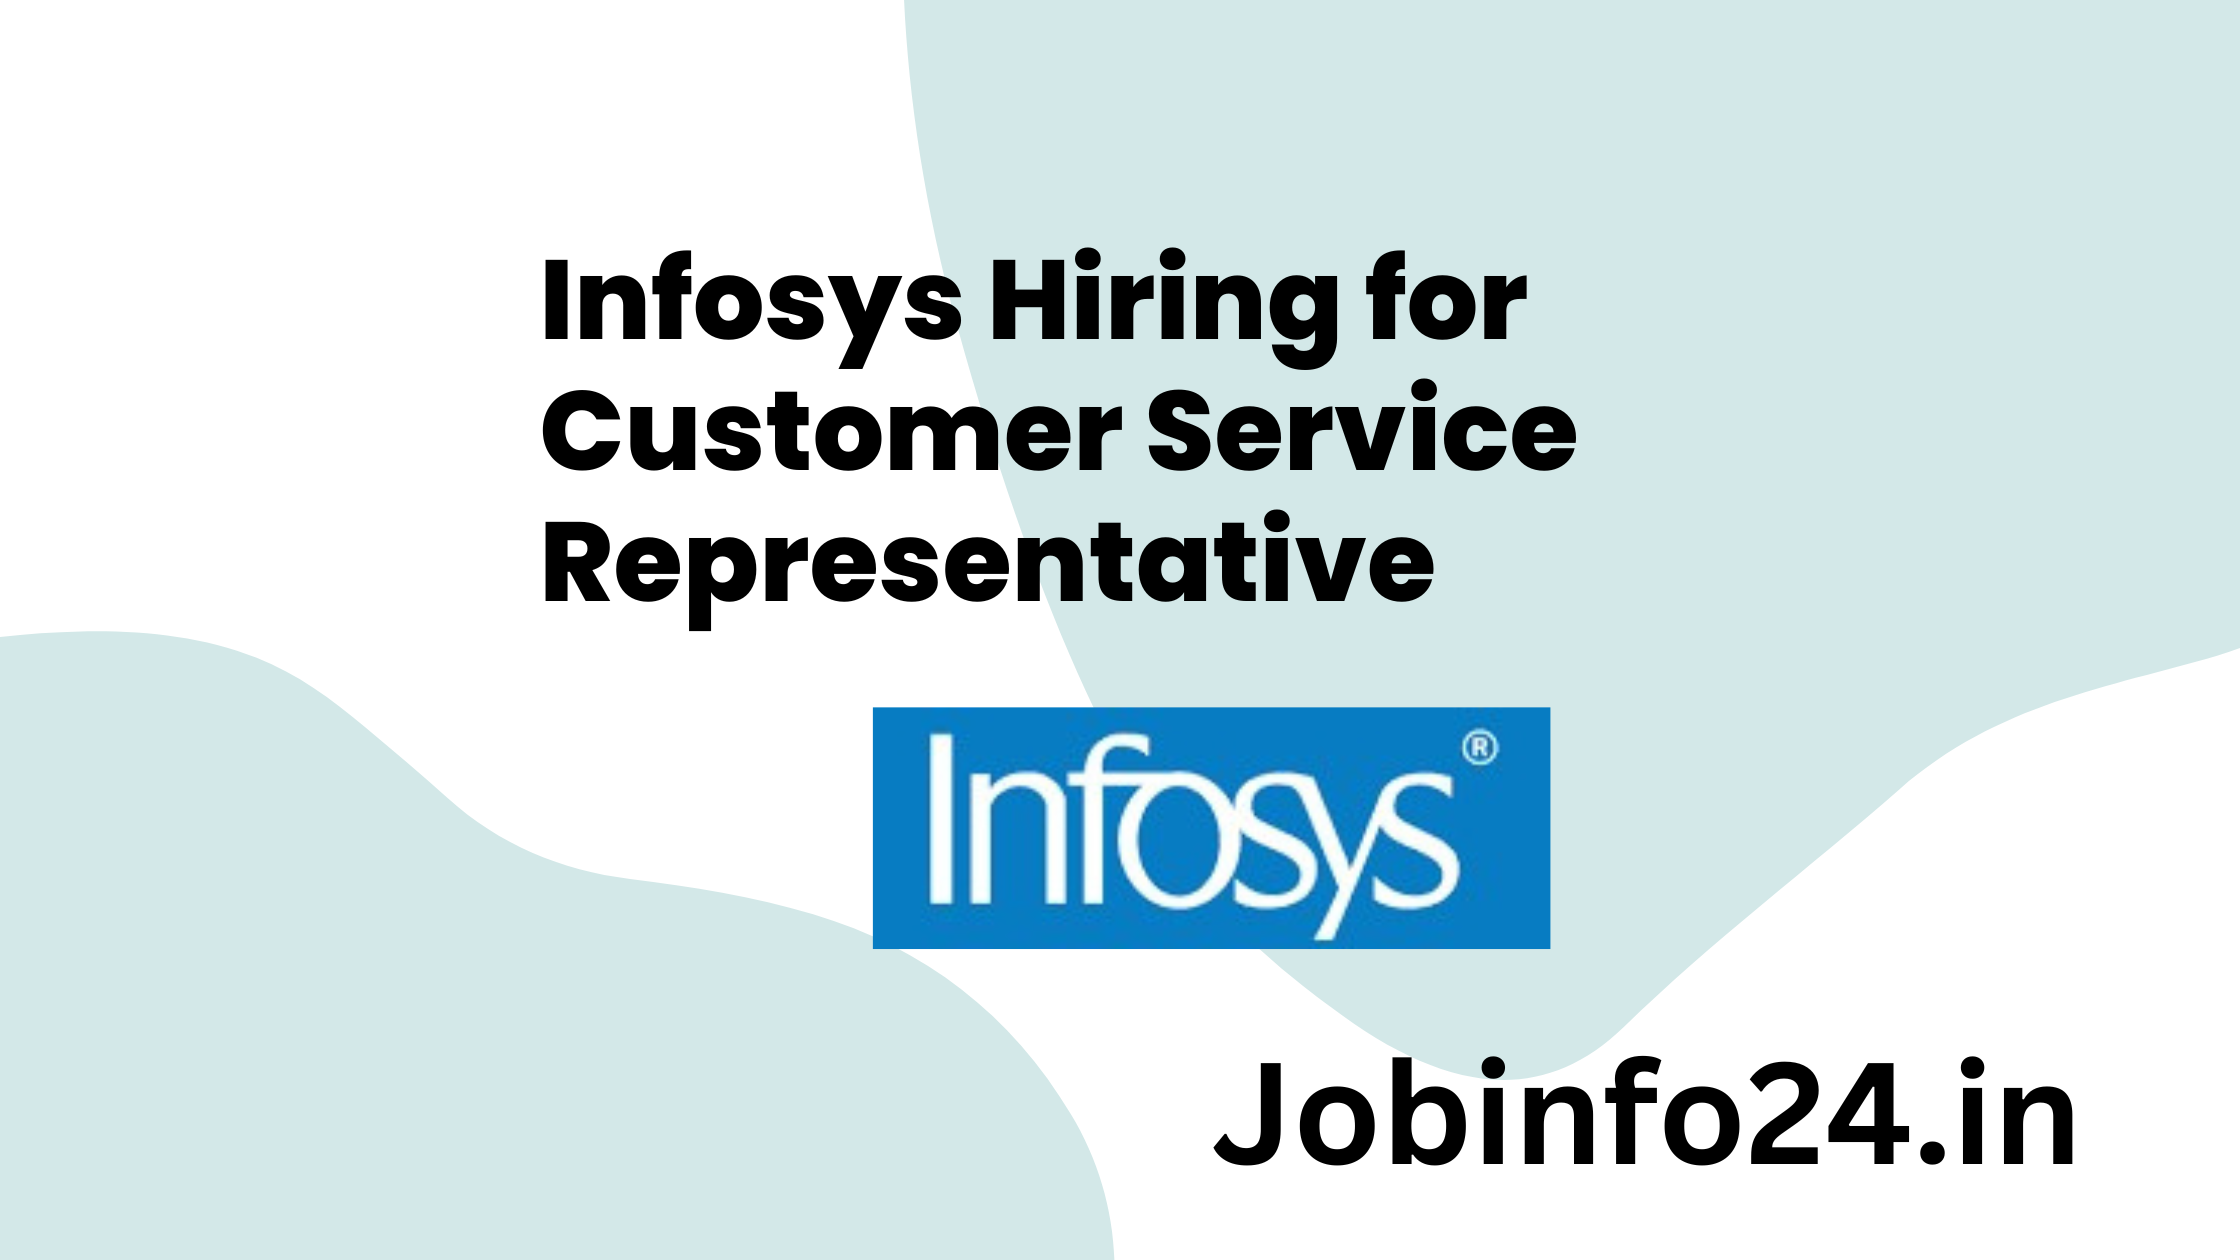 Infosys Hiring for Customer Service Representative